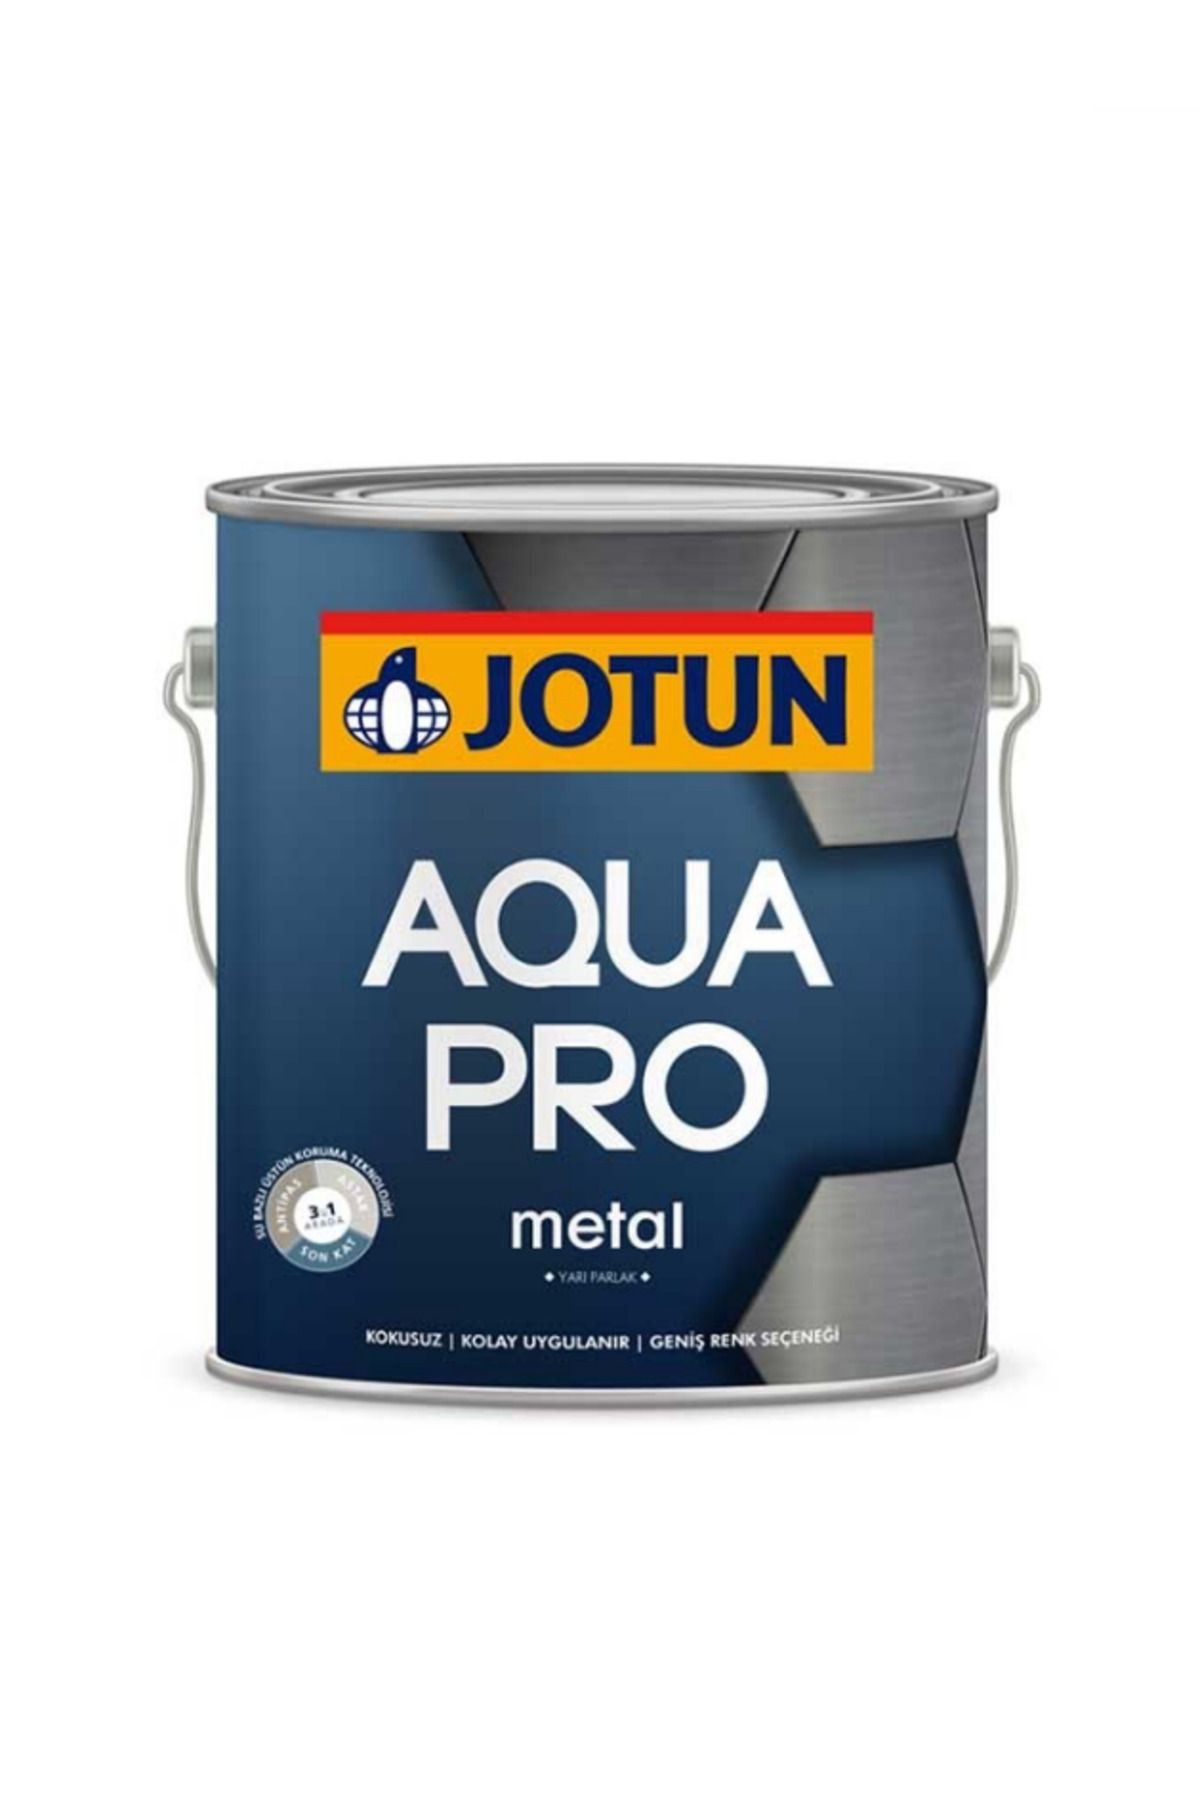 Jotun Aqua Pro RAL 4008 Signalviolett Metal Boyası 2,25 LT